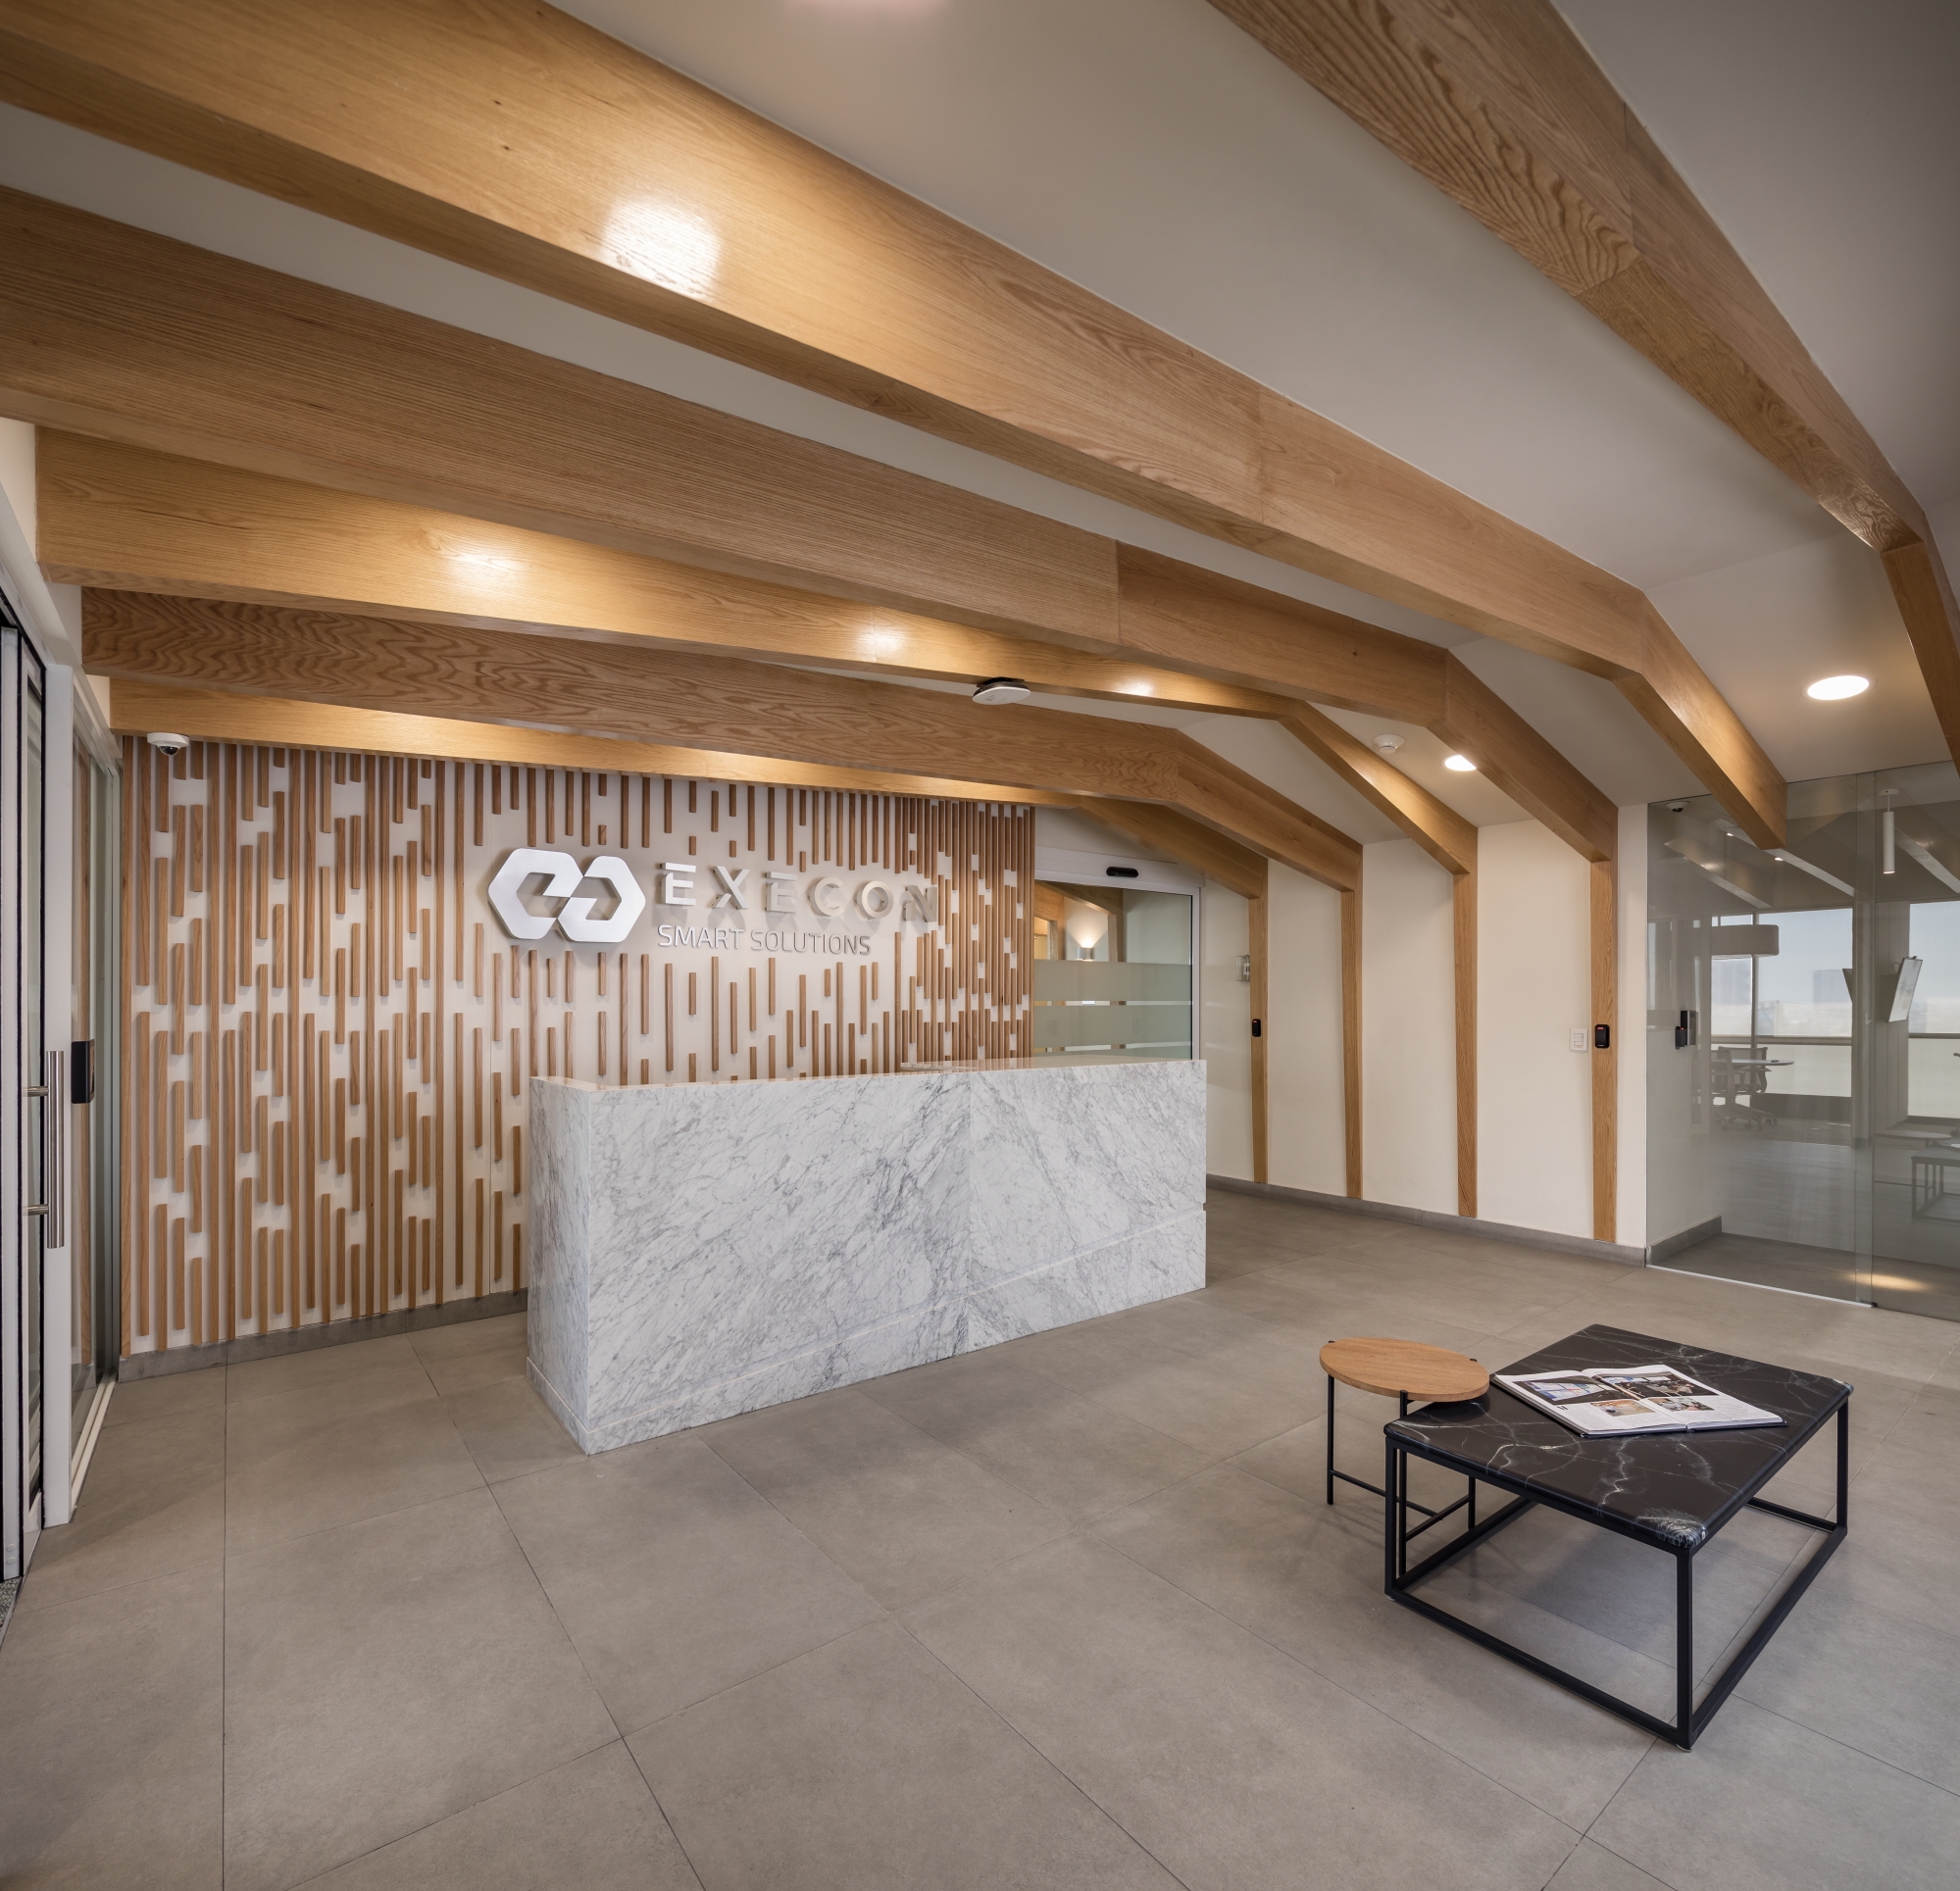 Execution公司办公室——蒙特雷|ART-Arrakis | 建筑室内设计的创新与灵感